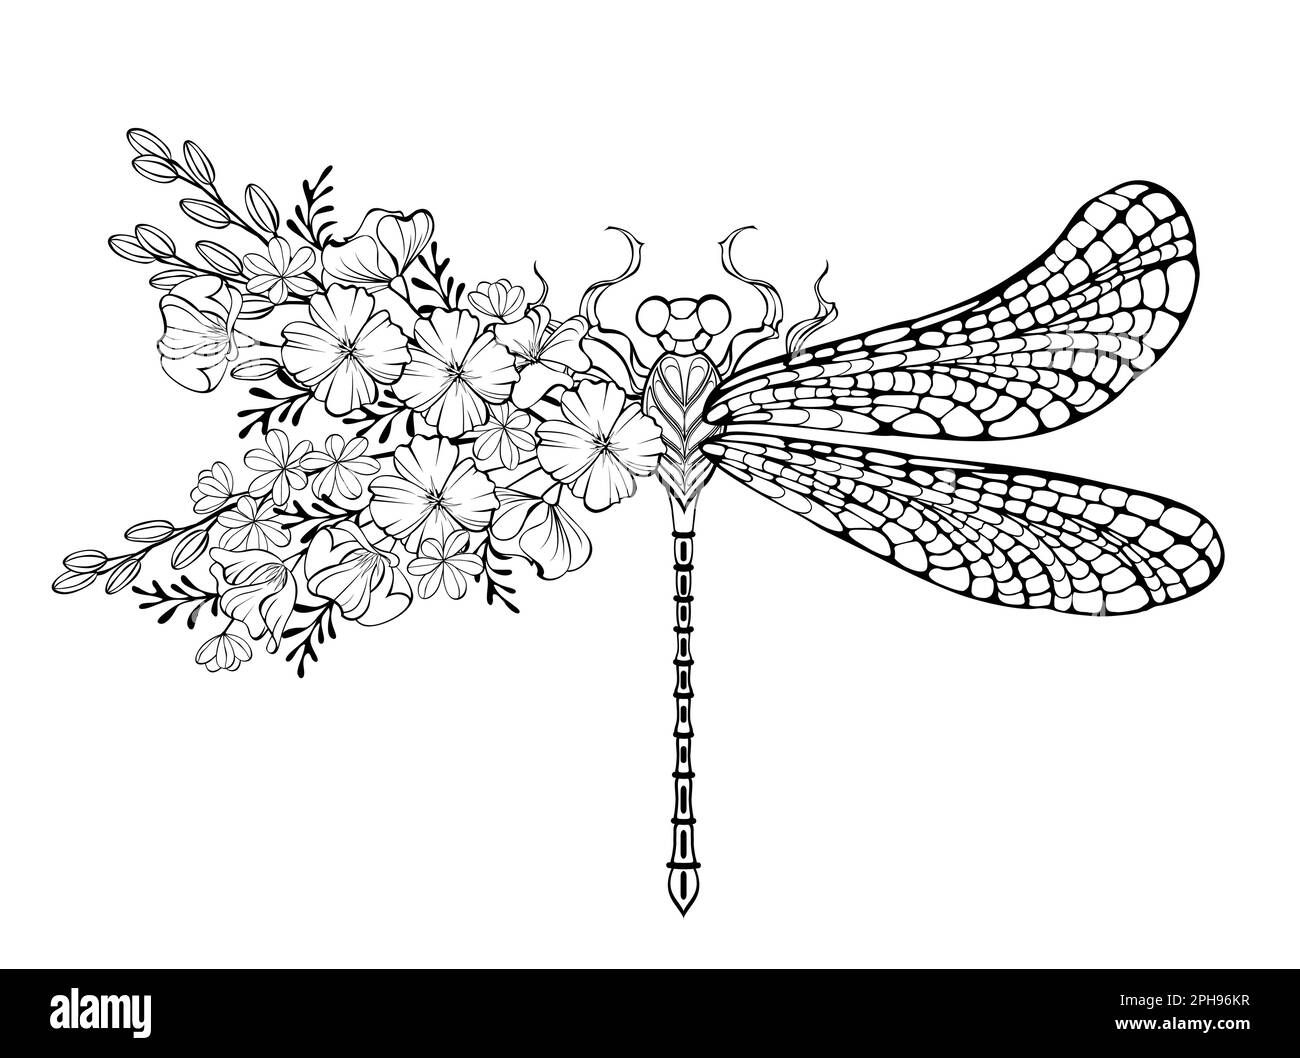 Kunstvoll gezeichnete Libelle mit Blumenmuster und Flügel, dekoriert mit kalifornischem Mohn und wilden Pflanzen auf weißem Hintergrund. Färben der Libelle mit Blumenmuster Stock Vektor